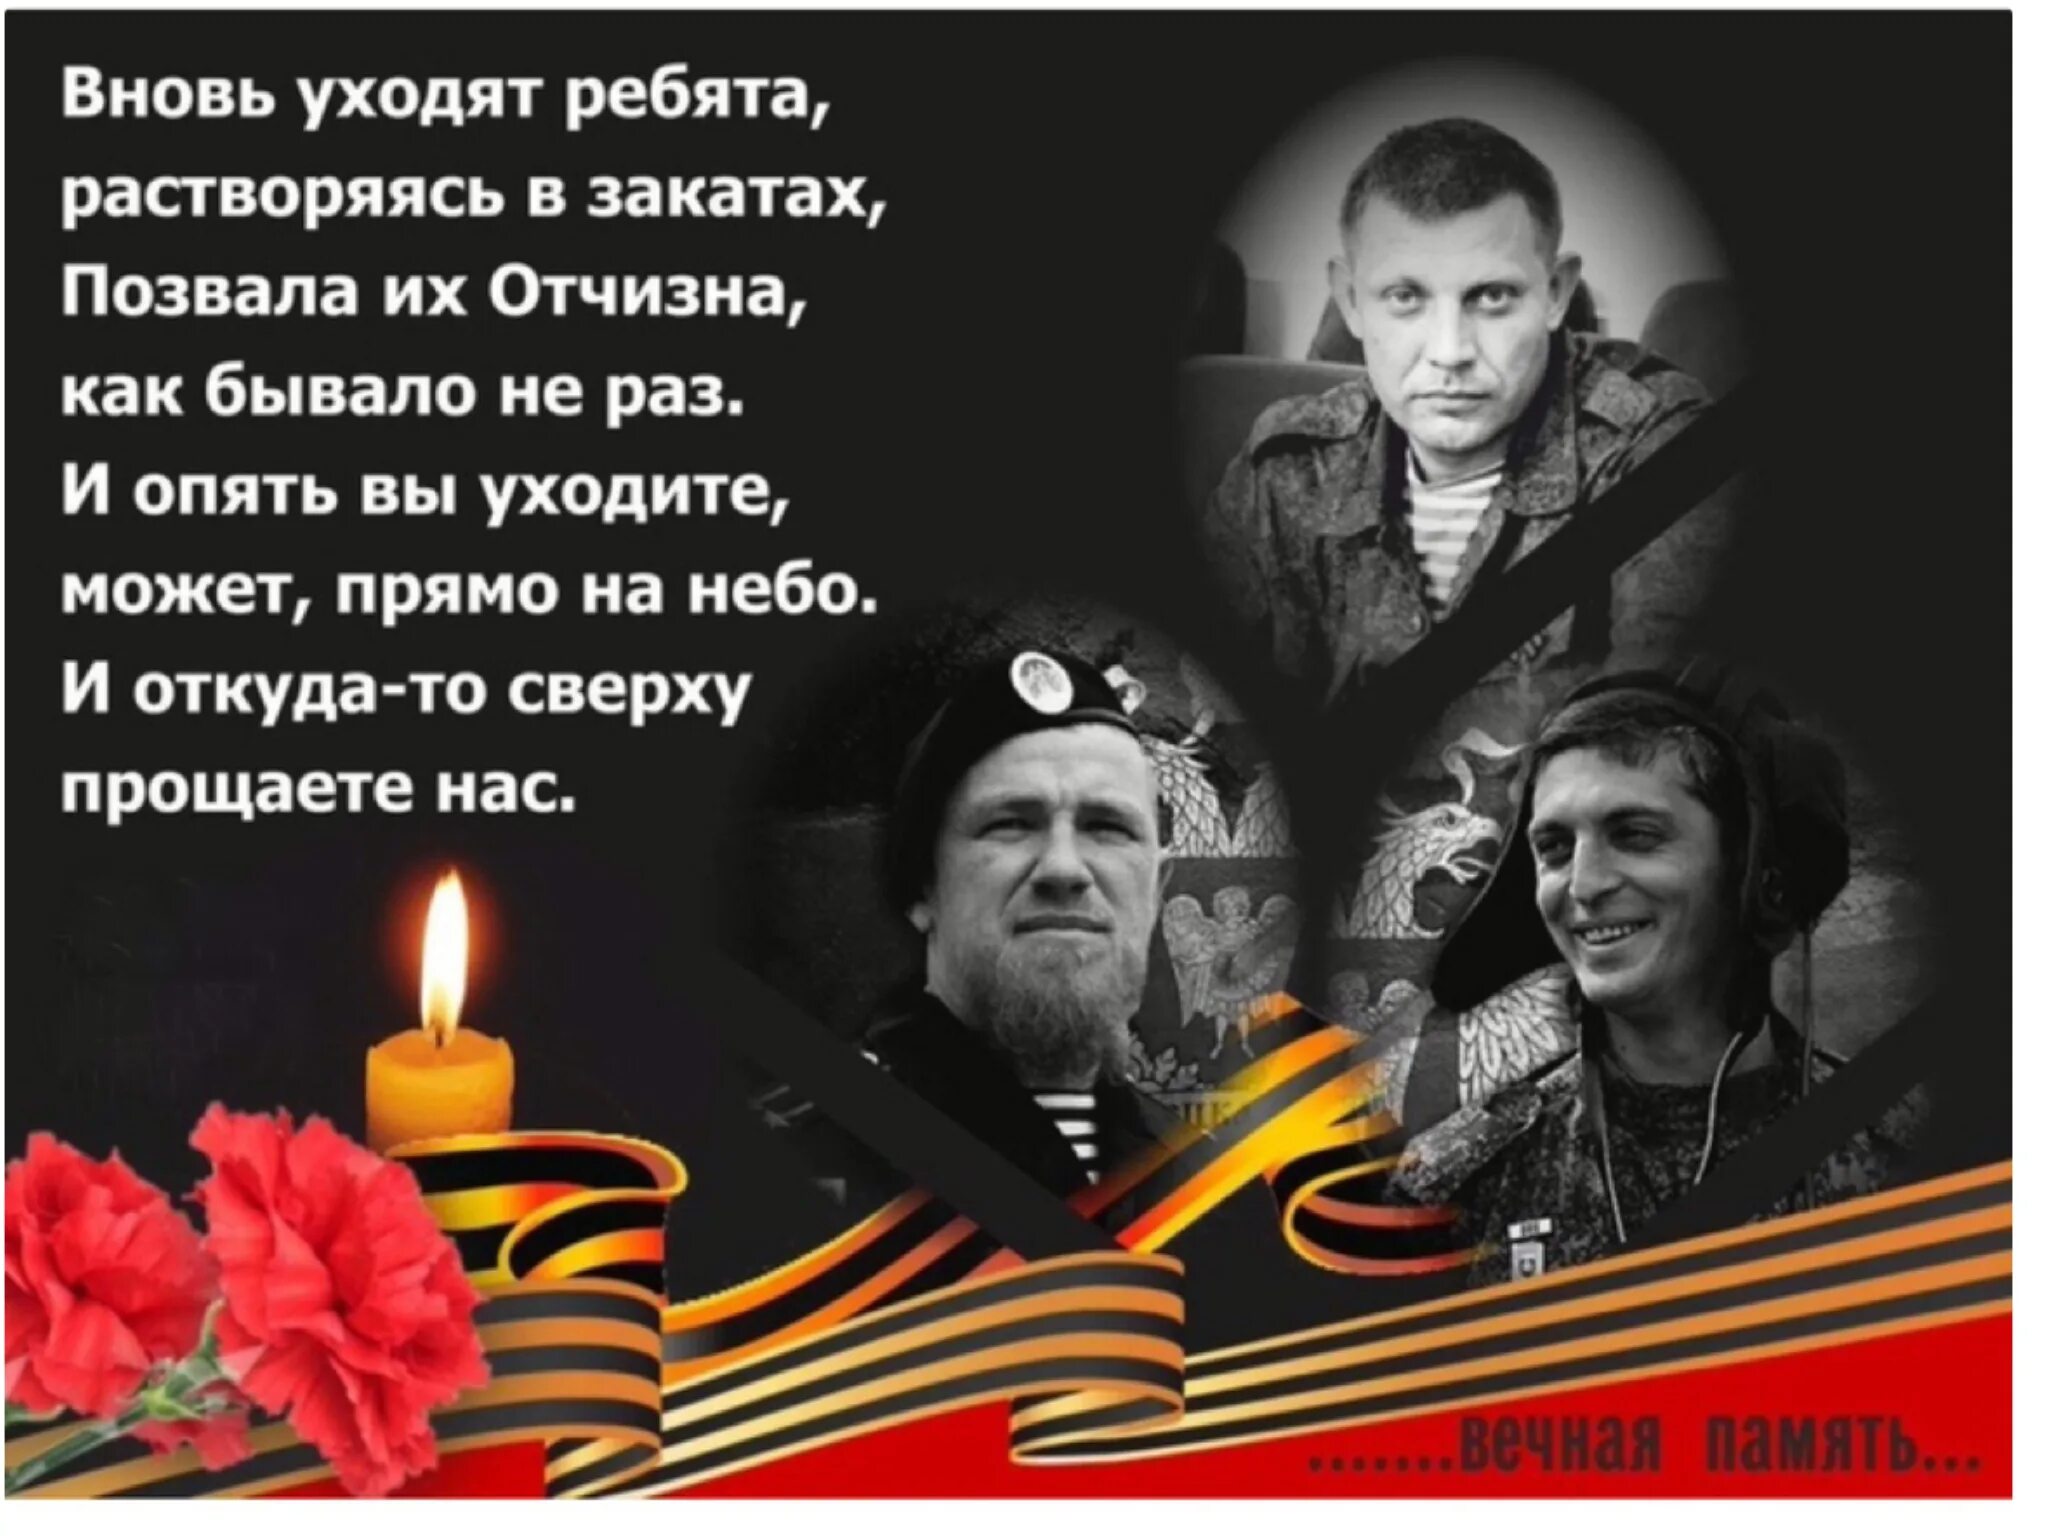 Захарченко светлая память. Вечнаяпамять героям Донасса. Вечная память героям Донбасса. Вечная память погибшим героям Донбасса.